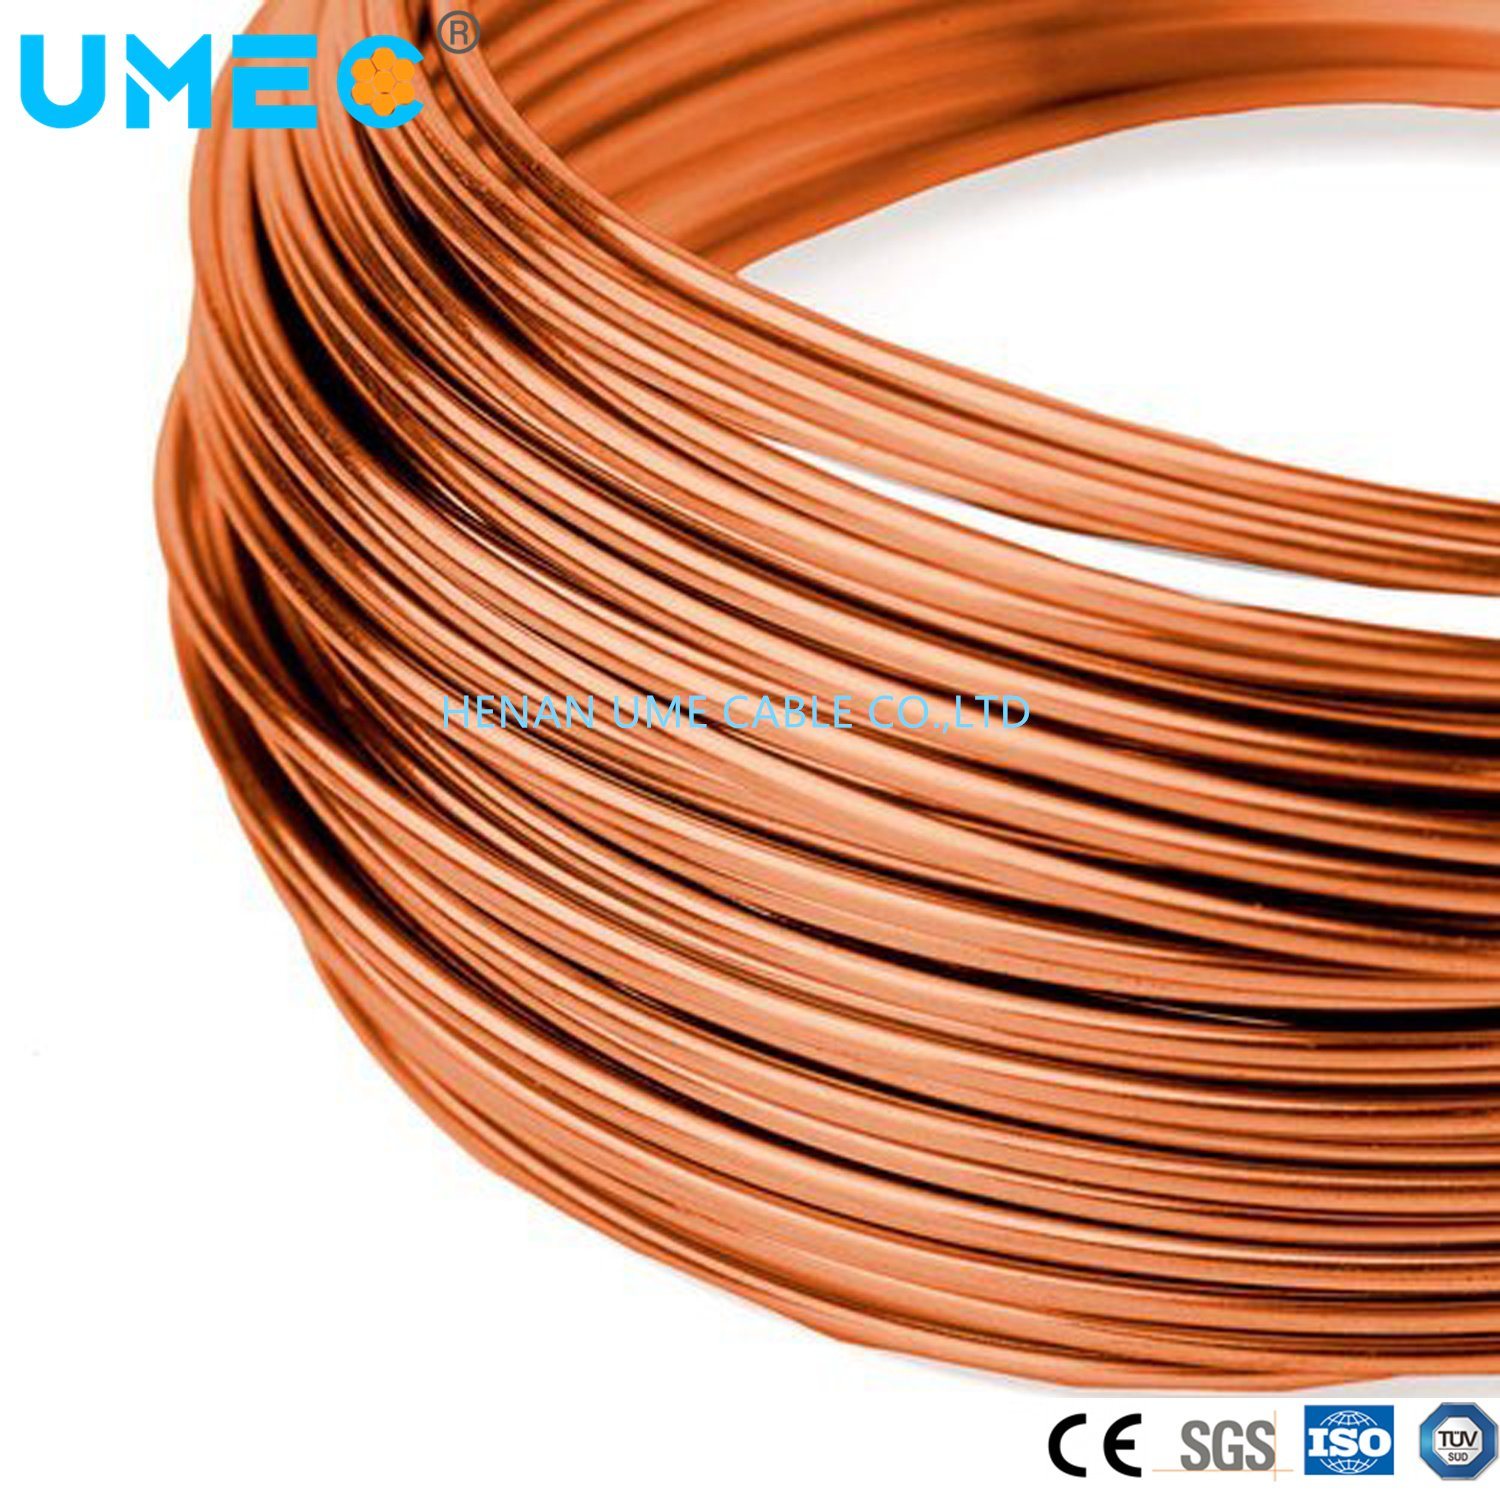 
                Conducteur électrique fil d′aluminium en cuivre et en aluminium (fil CCA) Polyester imide composé polyamide de 220 grades
            